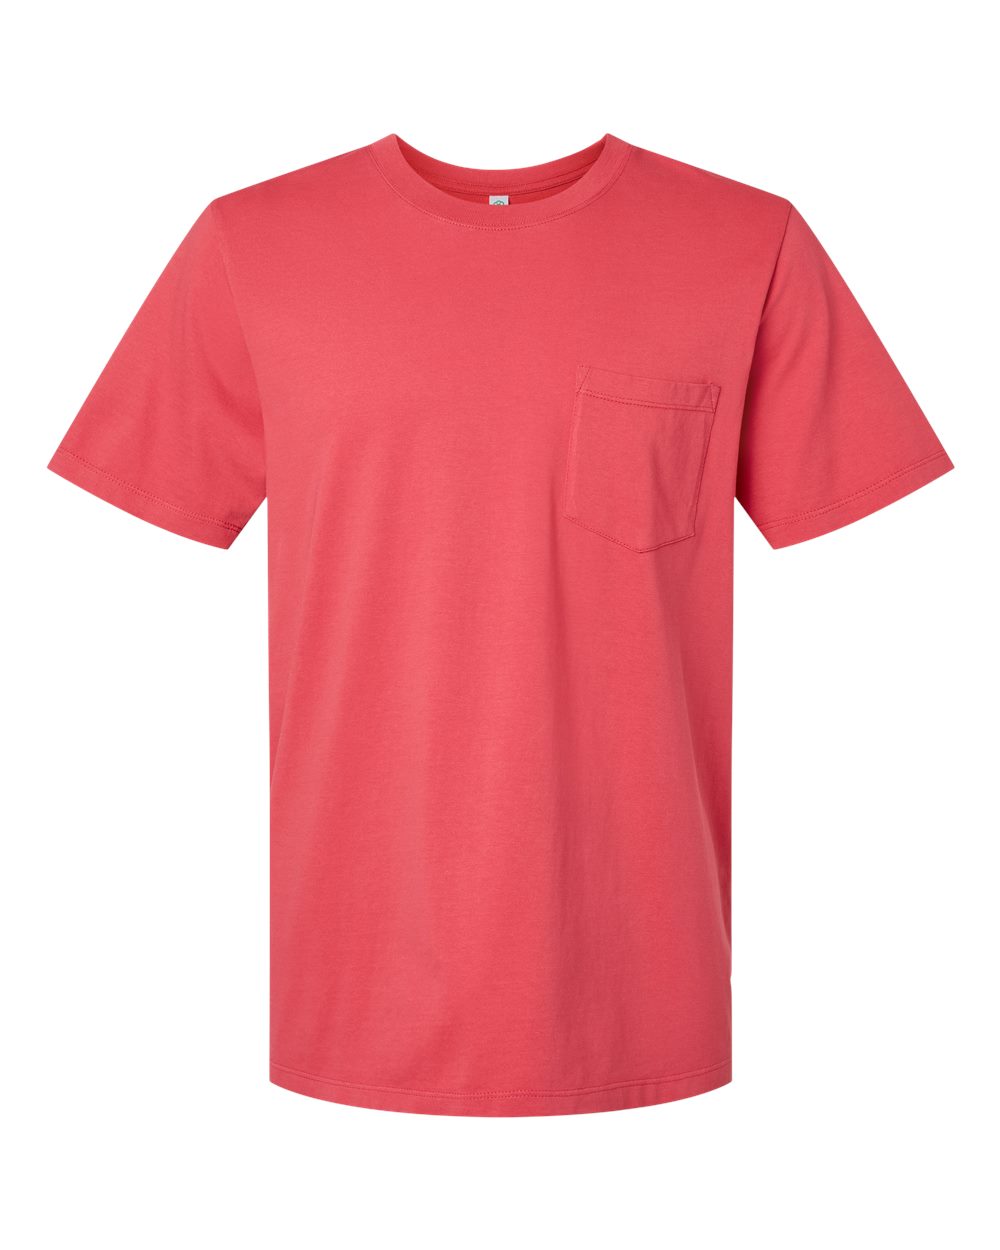 SoftShirts 210 - Classic Pocket T-Shirt